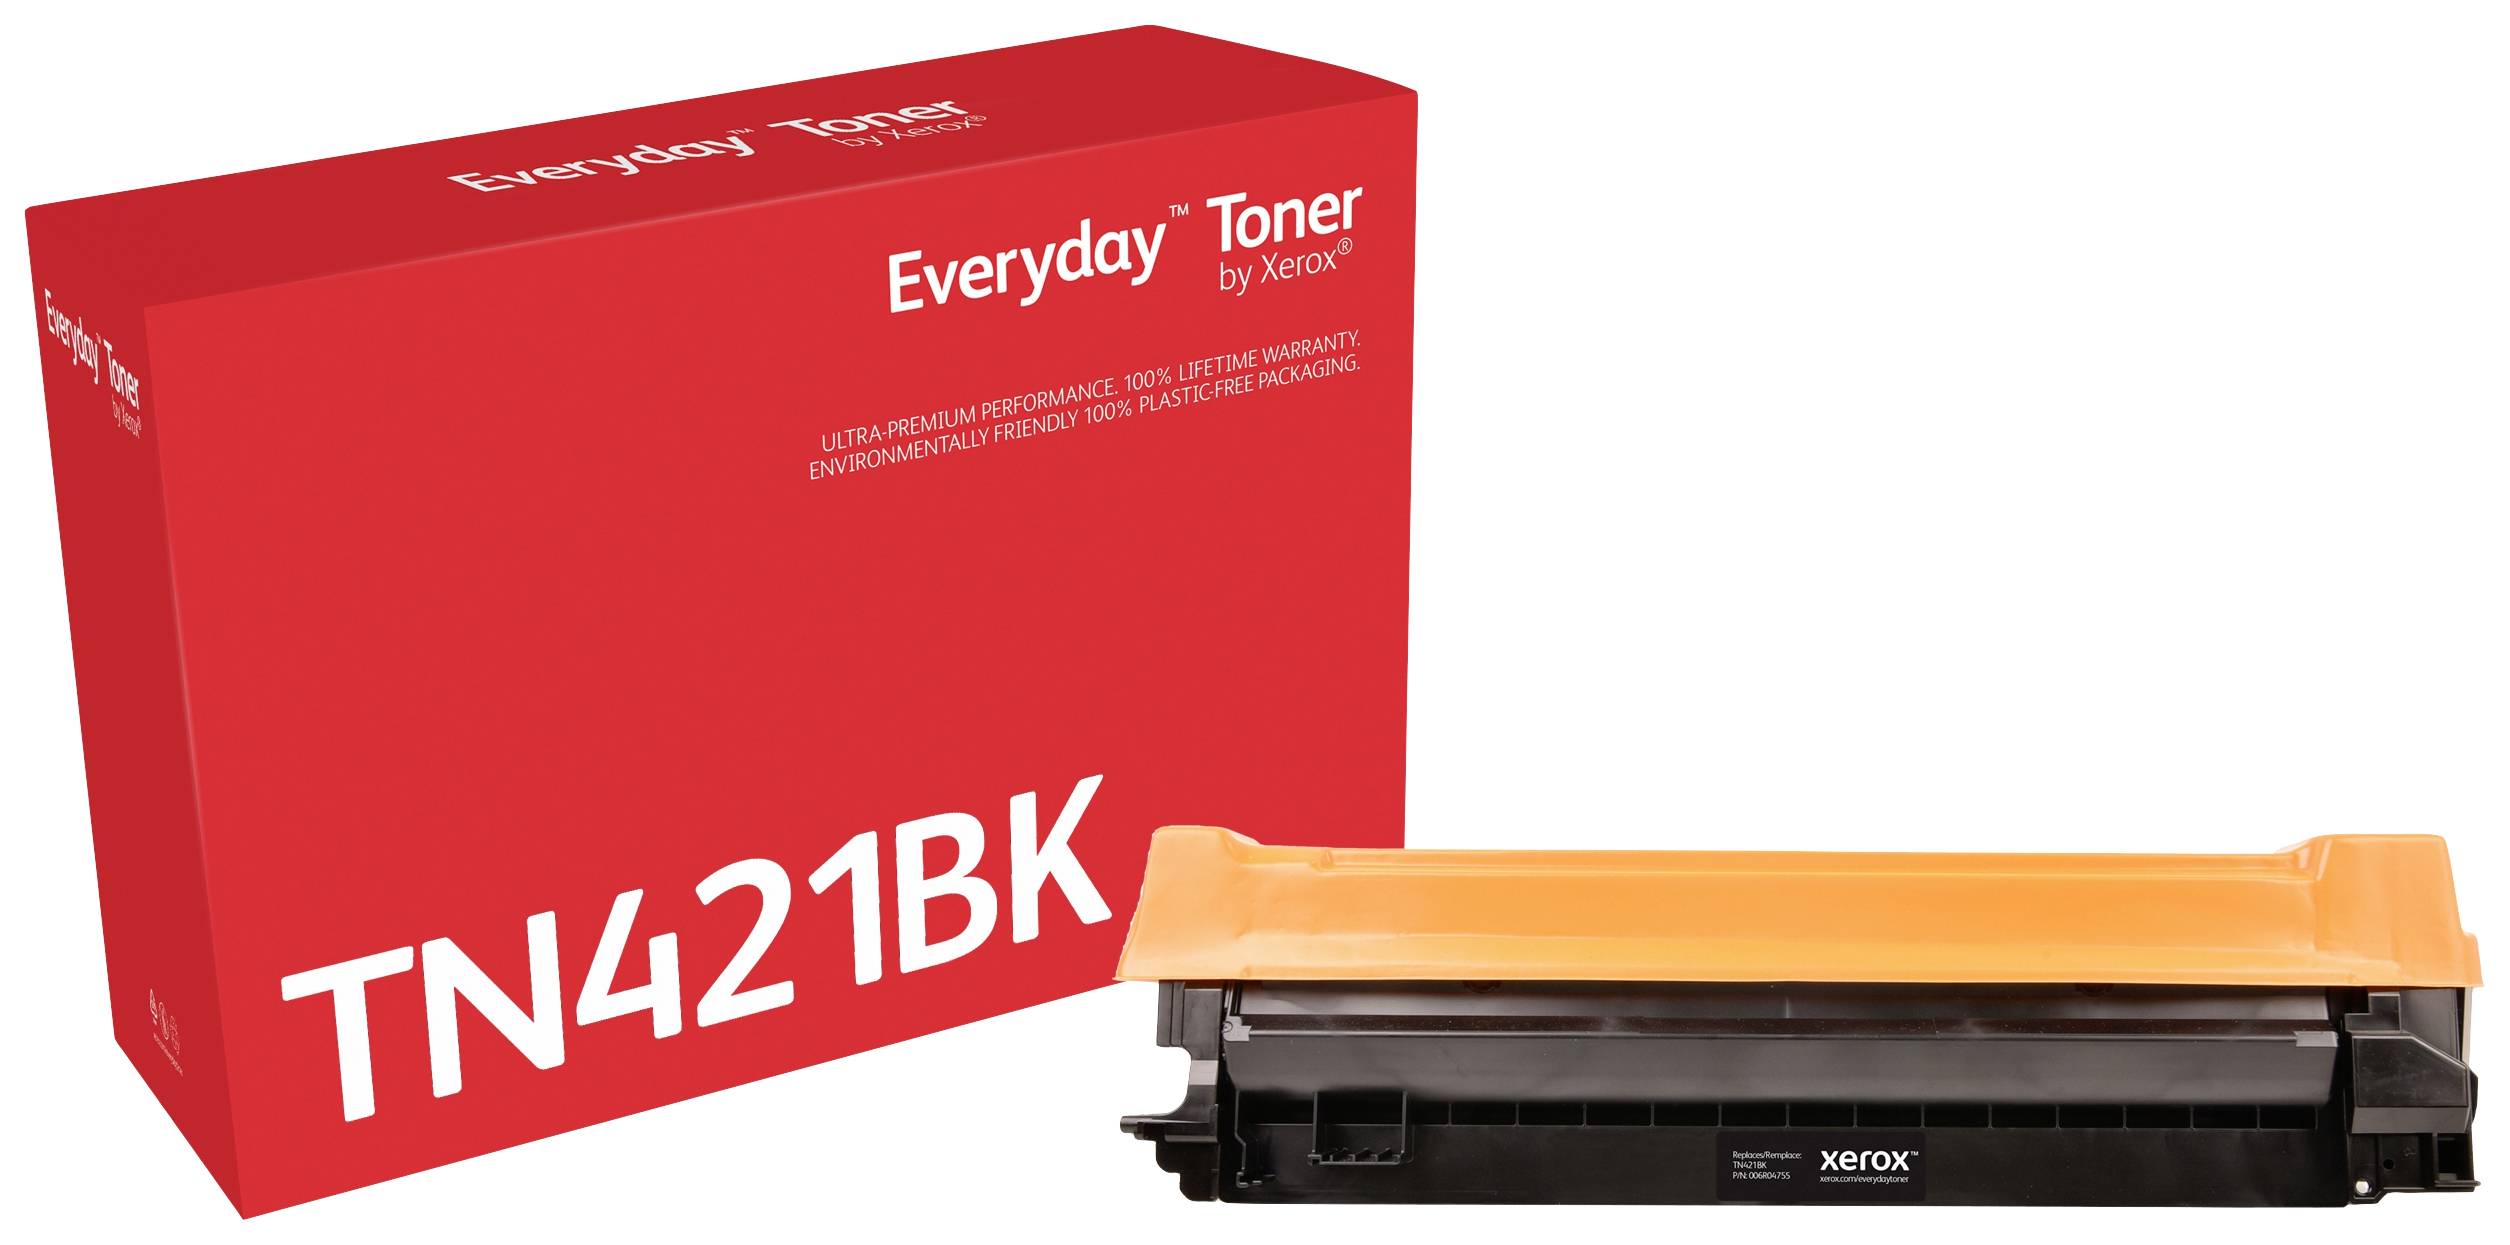 XEROX Everyday Toner in Schwarz Alternative für TN-421BK Standard für Brother DCP-L8410CDW/DCP-L8410